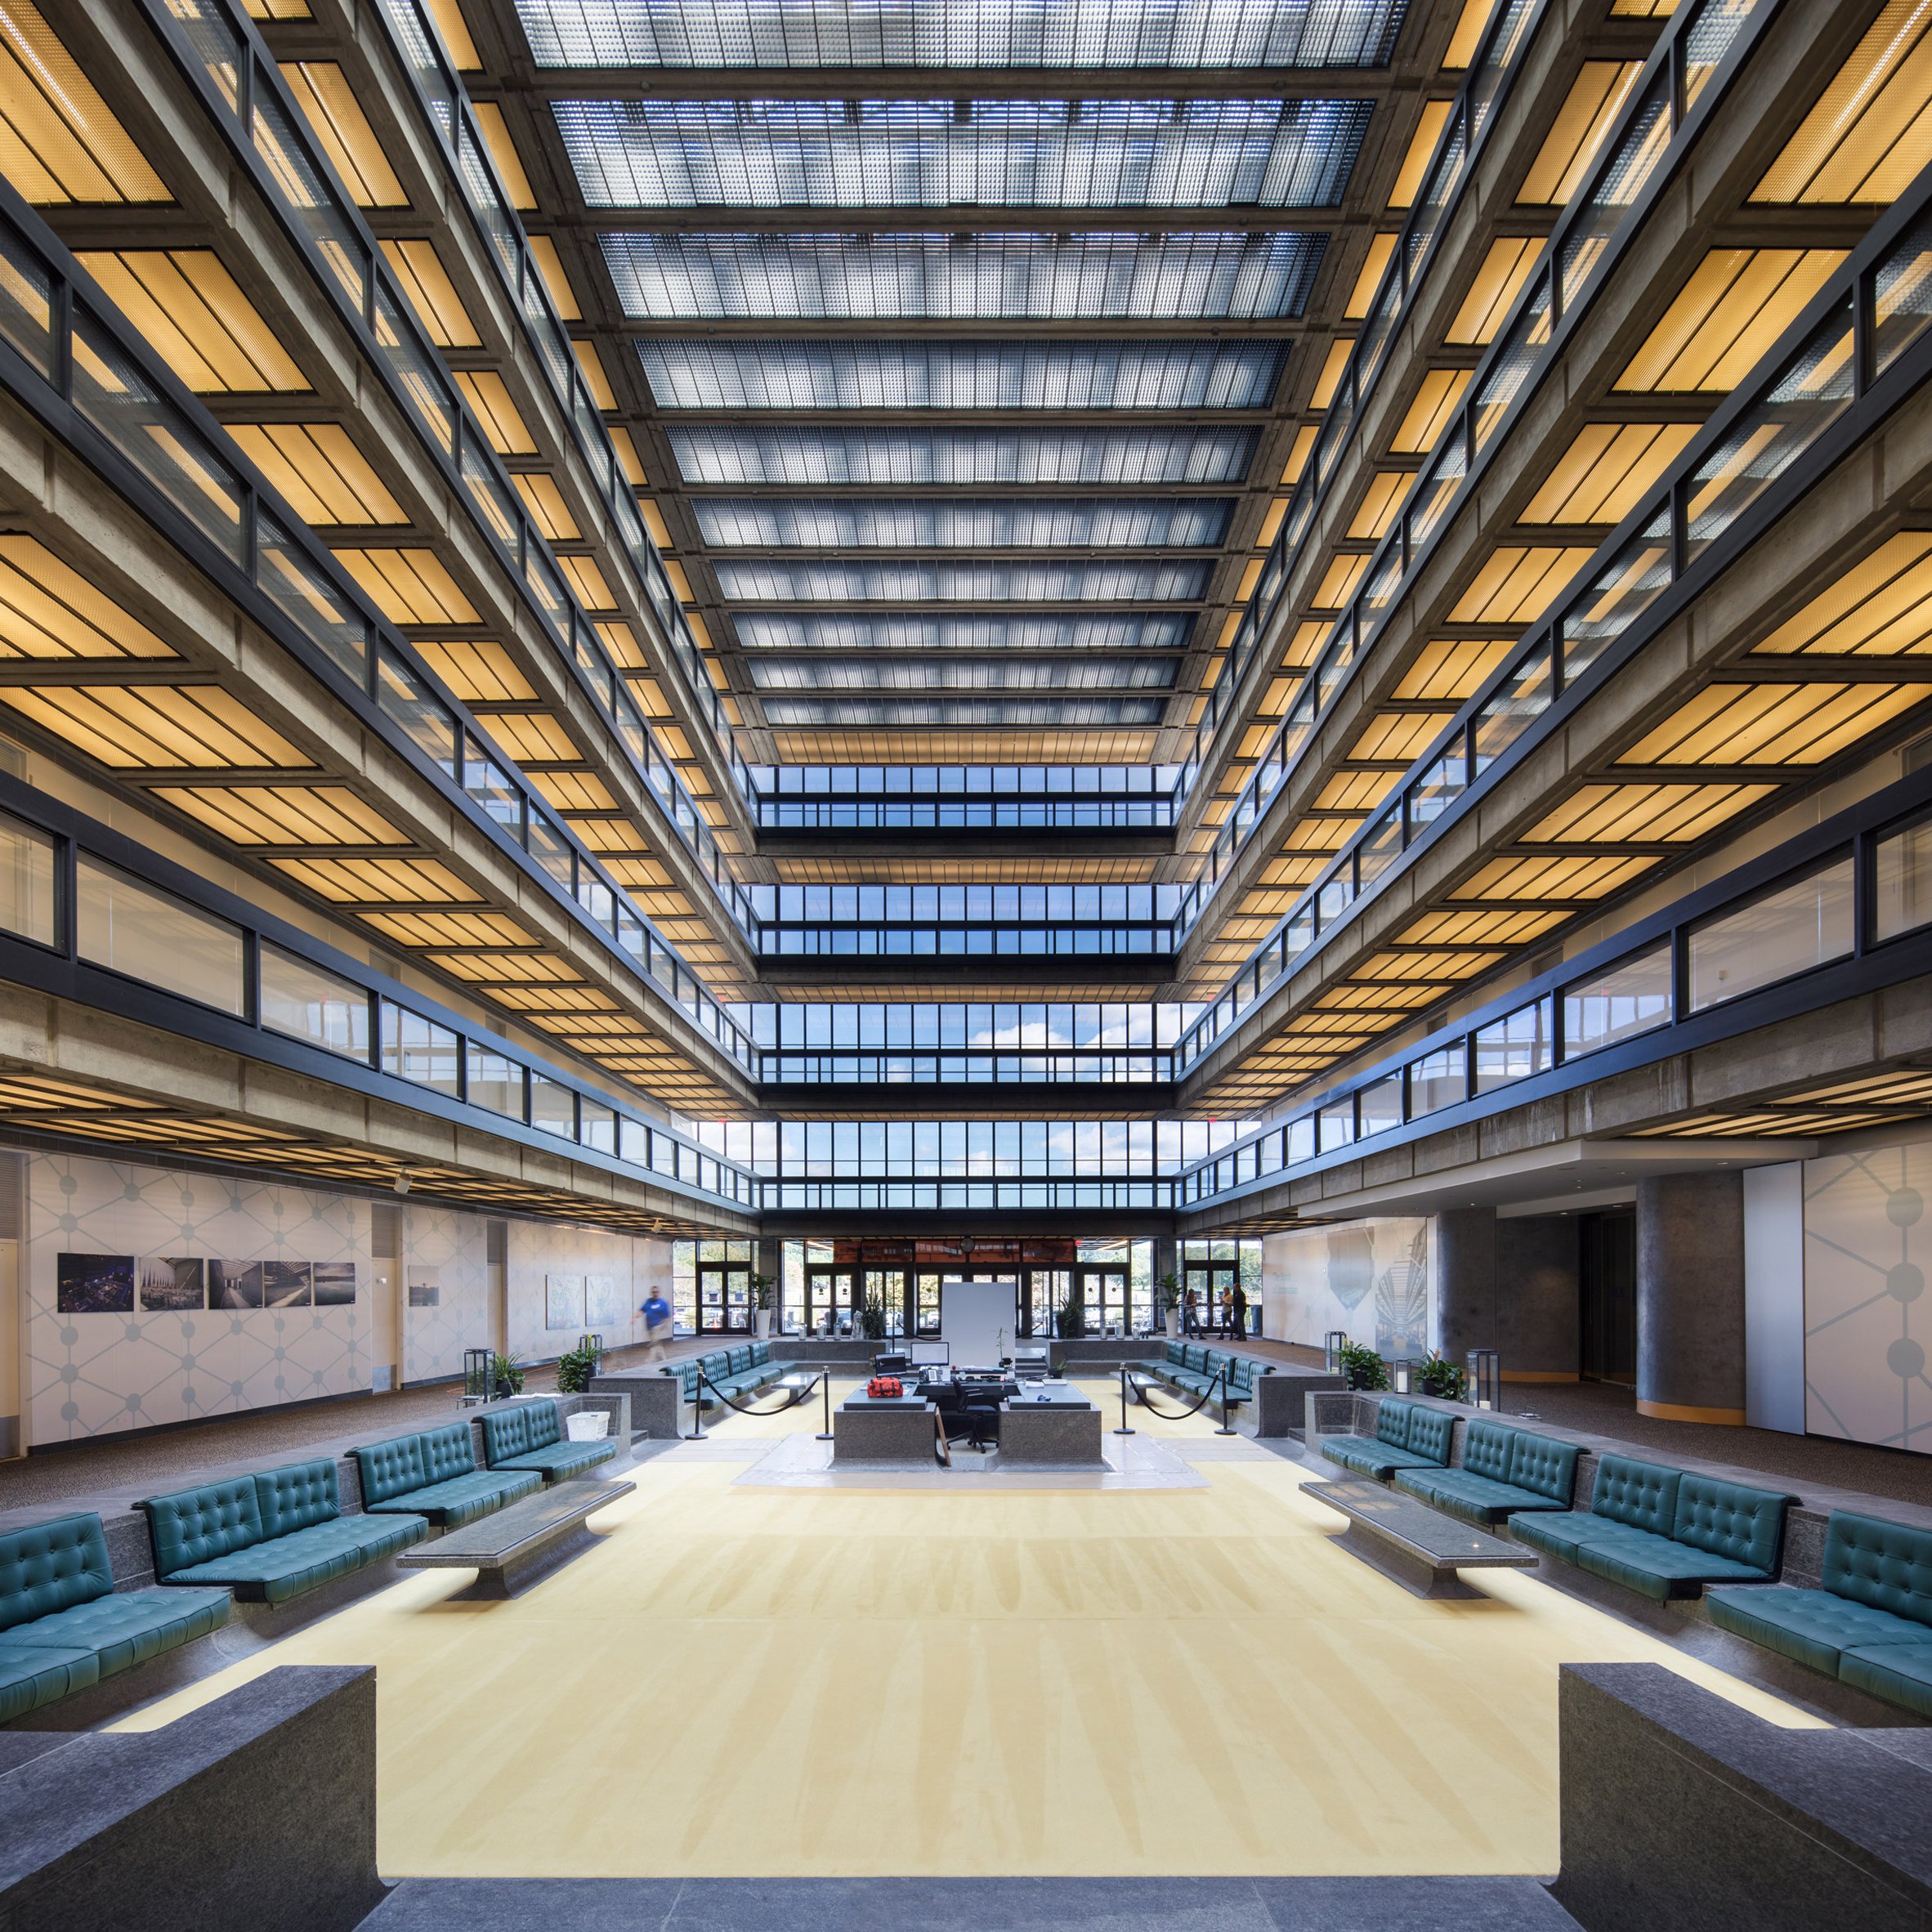 Bell Labs by Eero Saarinen, Holmdel, New Jersey